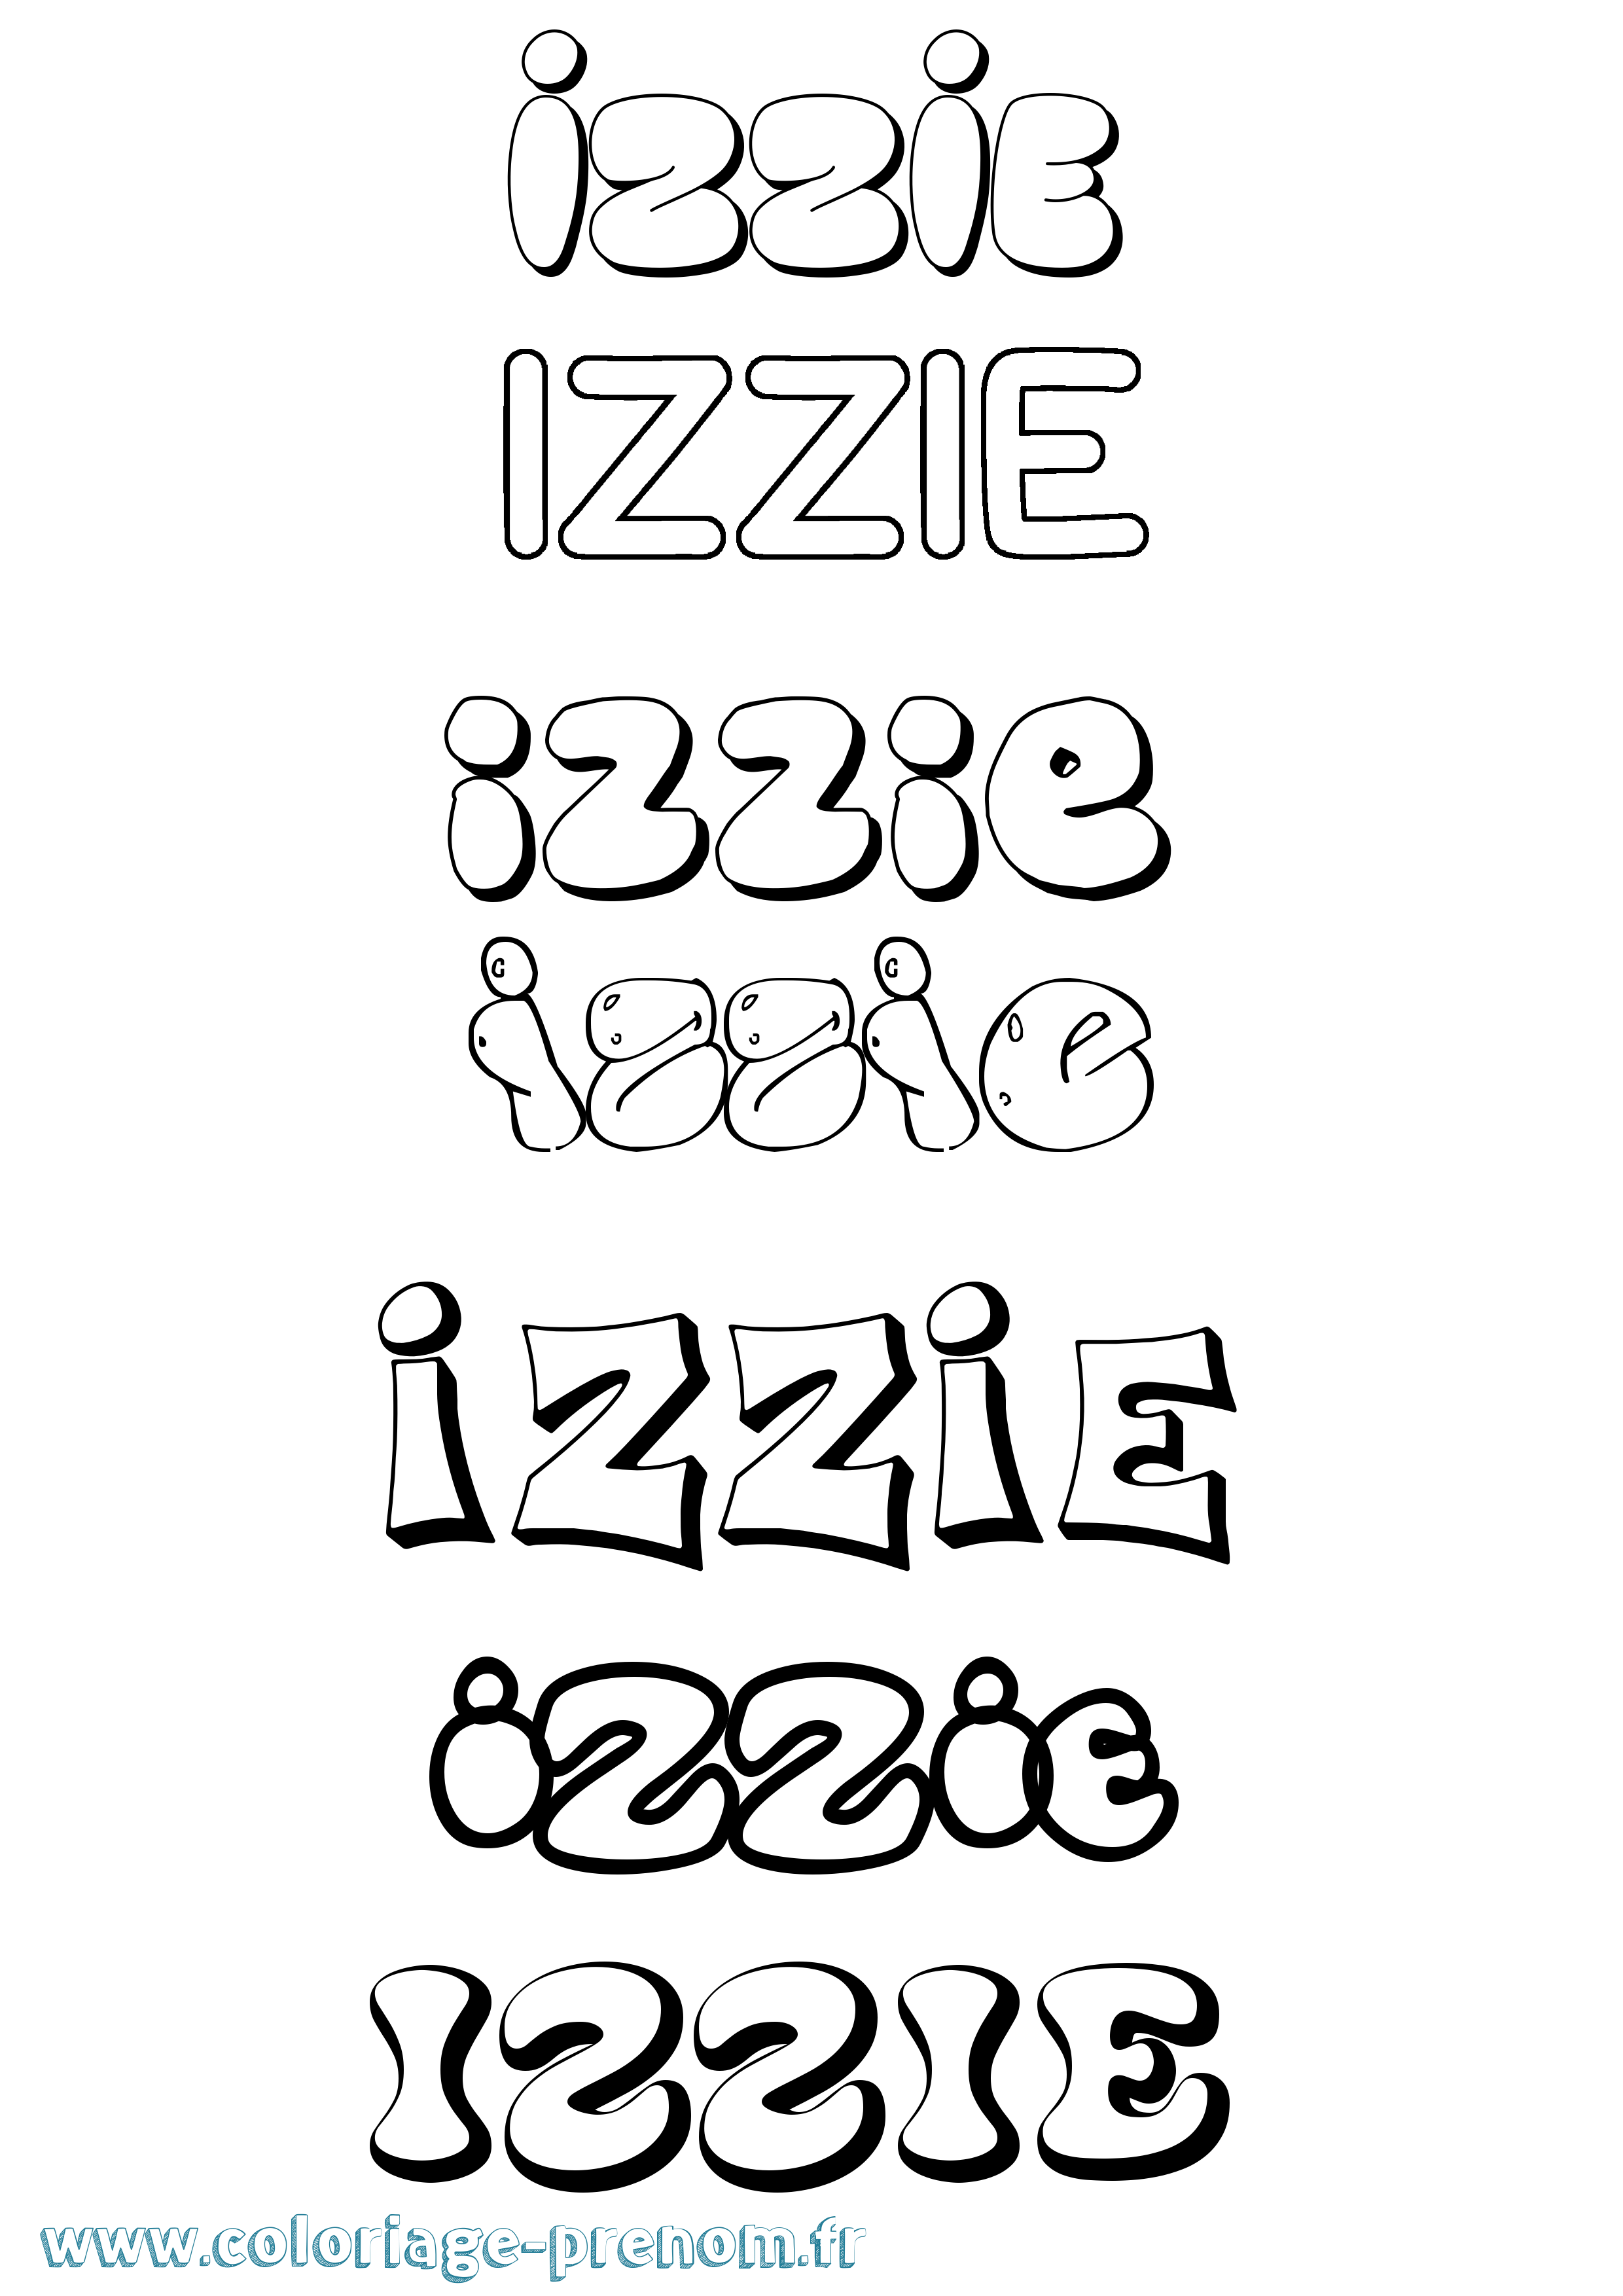 Coloriage prénom Izzie Bubble